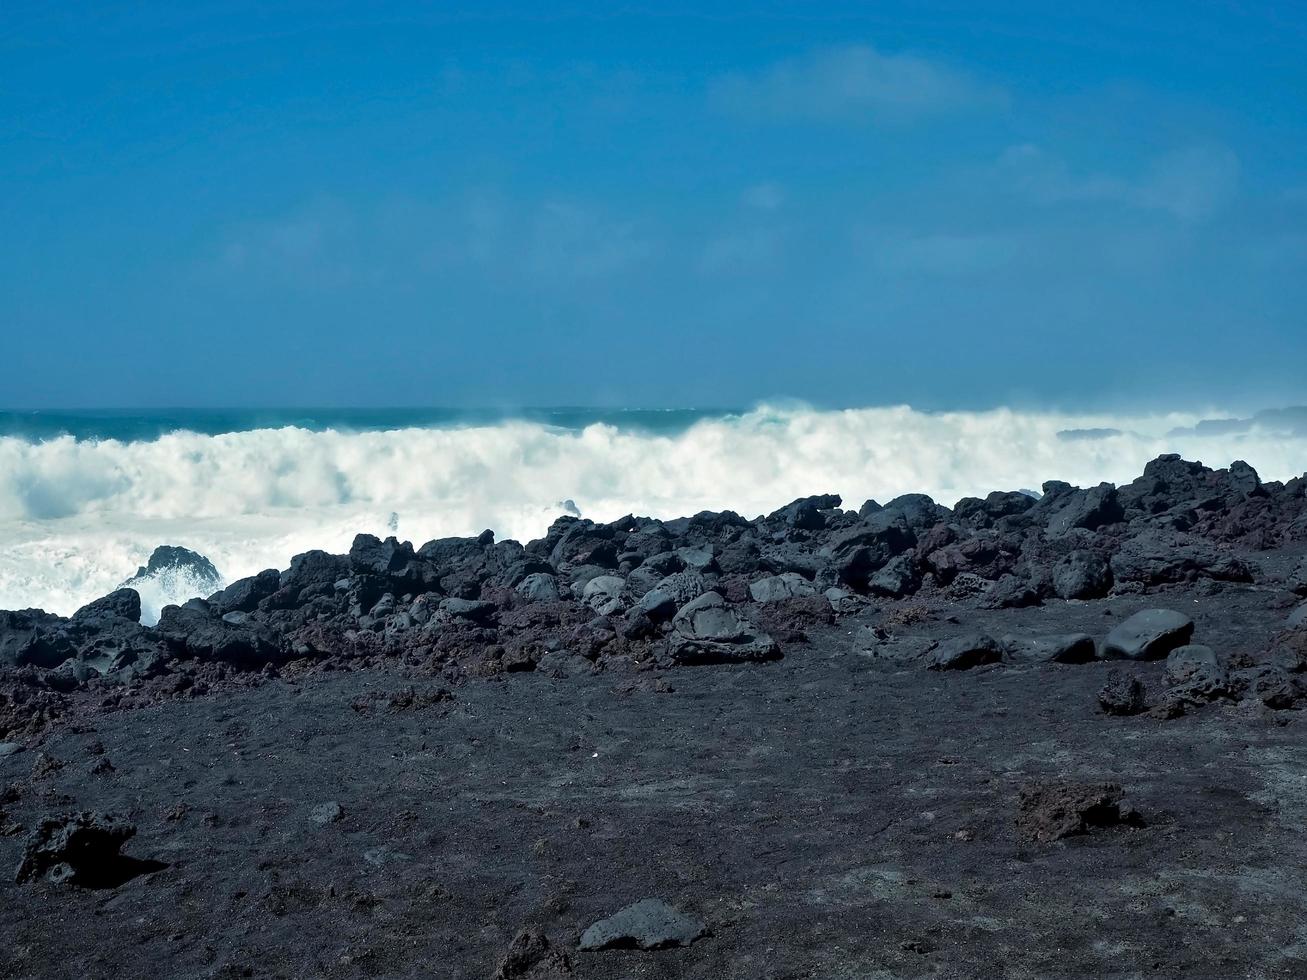 onde che incontrano la costa vulcanica nera a el golfo lanzarote isole canarie foto